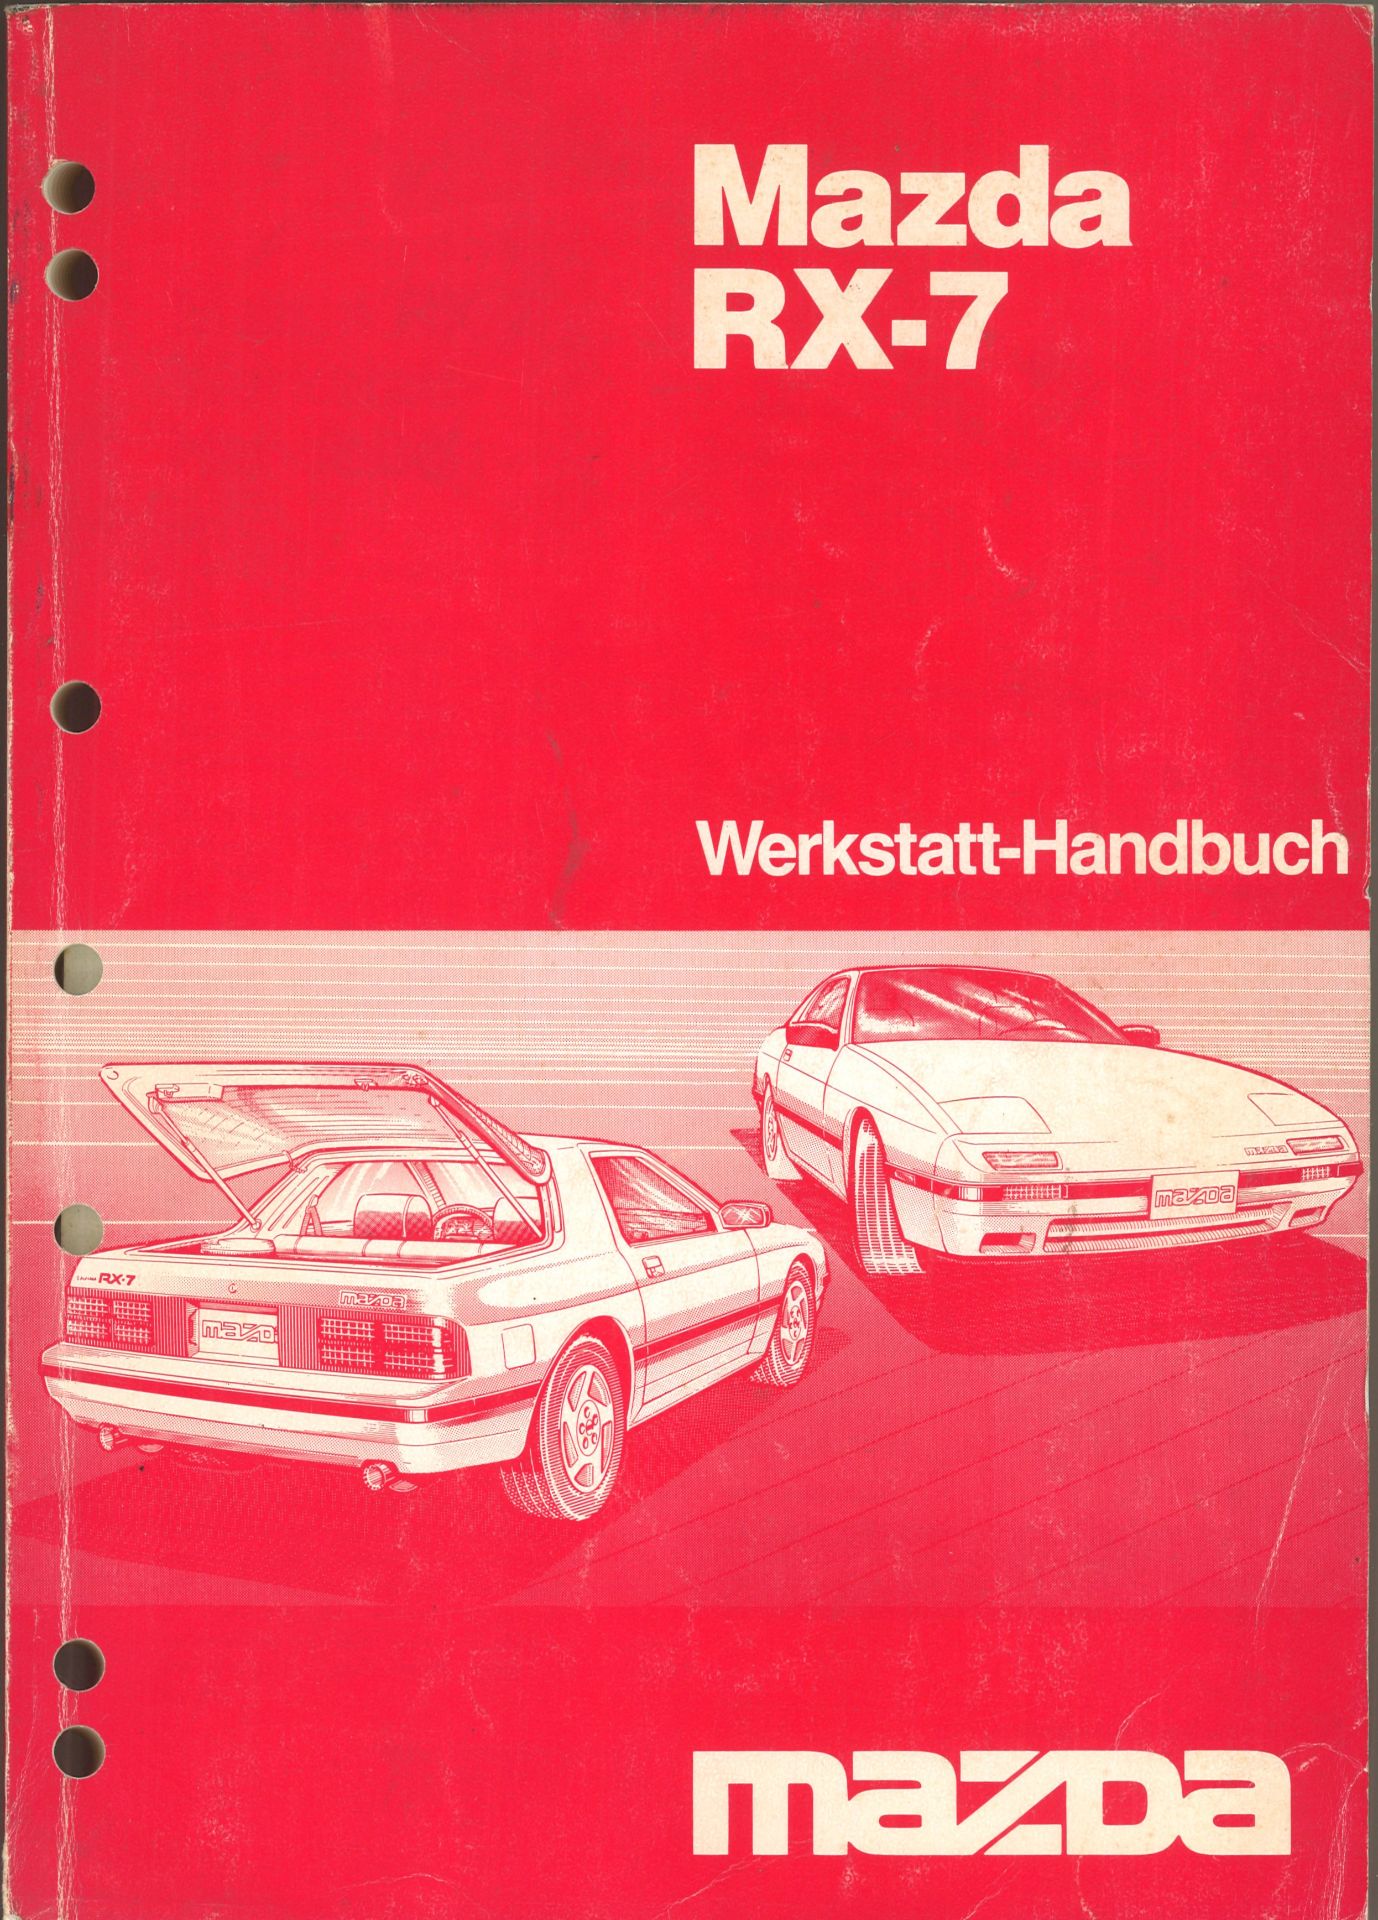 Aus Oldtimer Sammlung! Werkstatt - Handbuch "Mazda RX - 7" Gedruckt in Japan, Januar 1986. Mazda